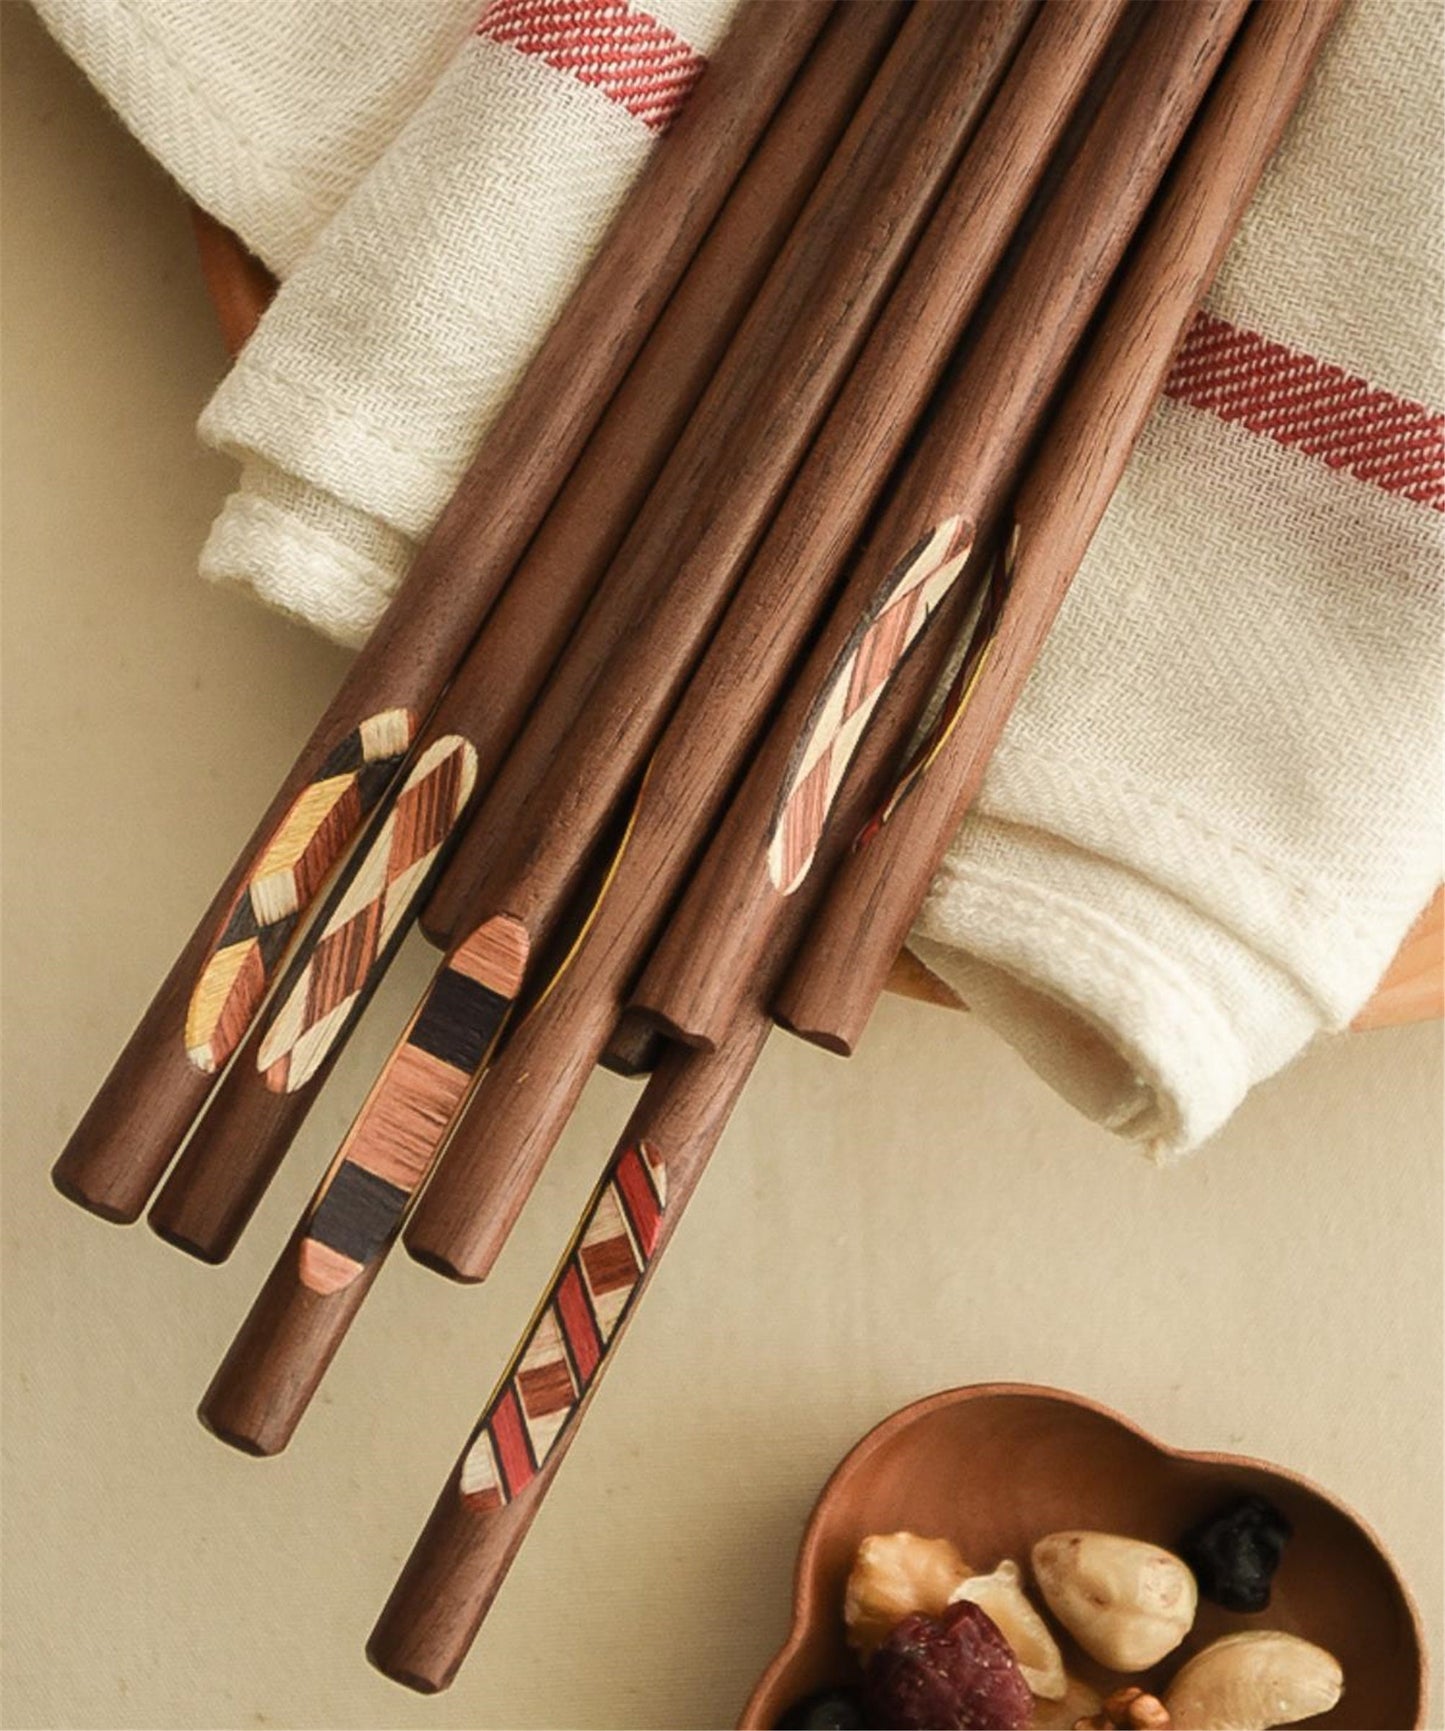 Best seller - Black walnut chopsticks, cherry wood chopsticks